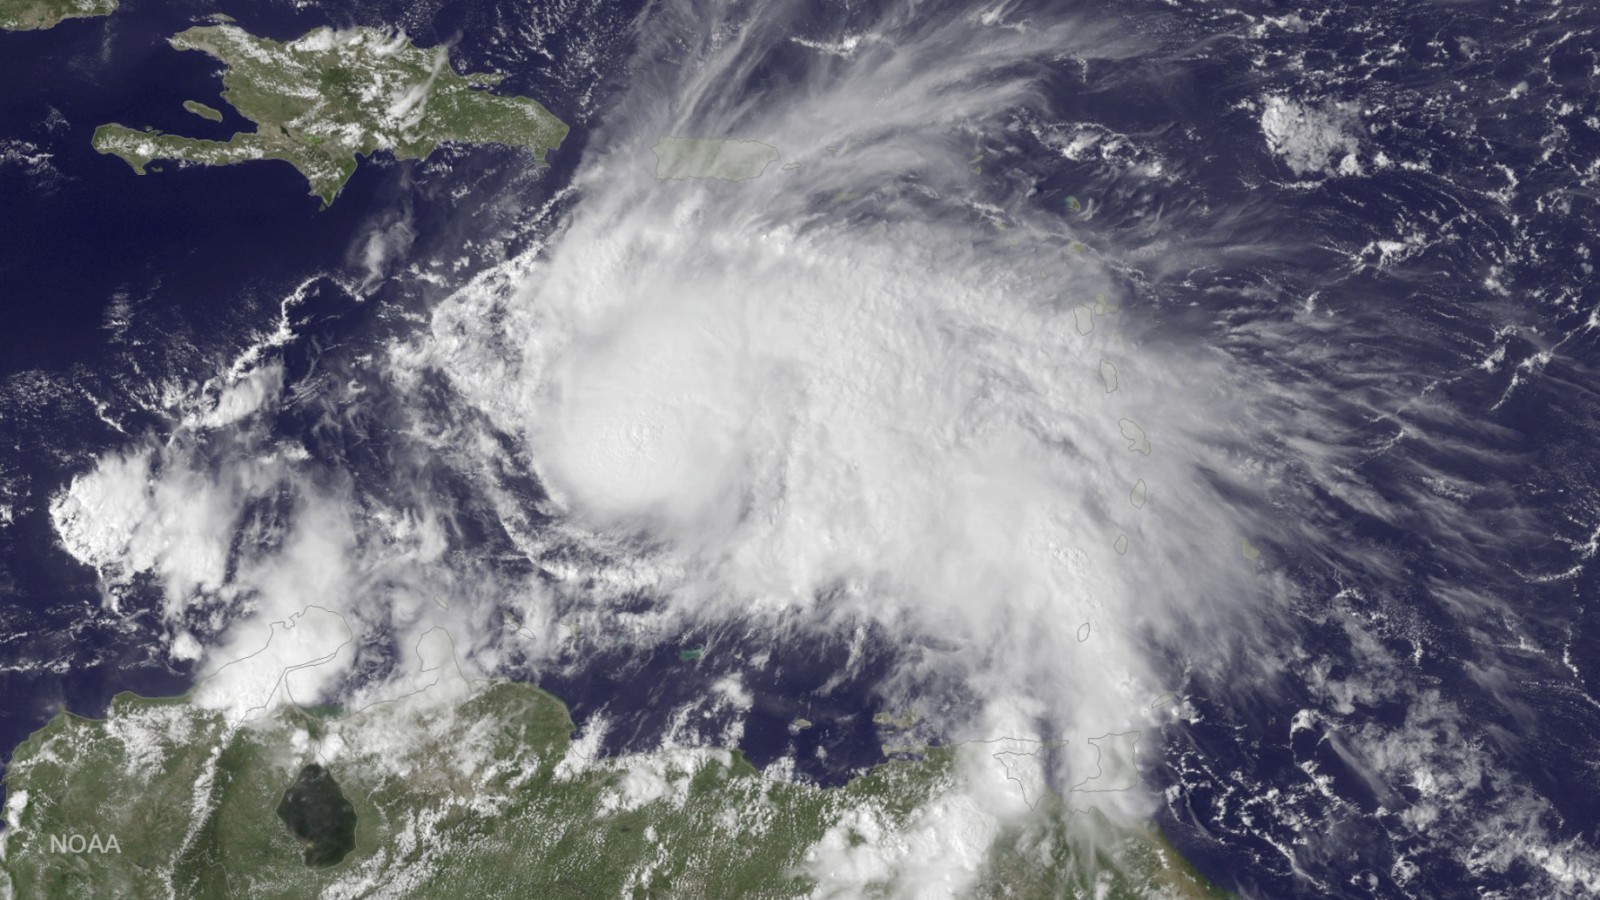 צילום לוויין של הוריקן מת'יו מעל הים הקריבי (צילום: AP)